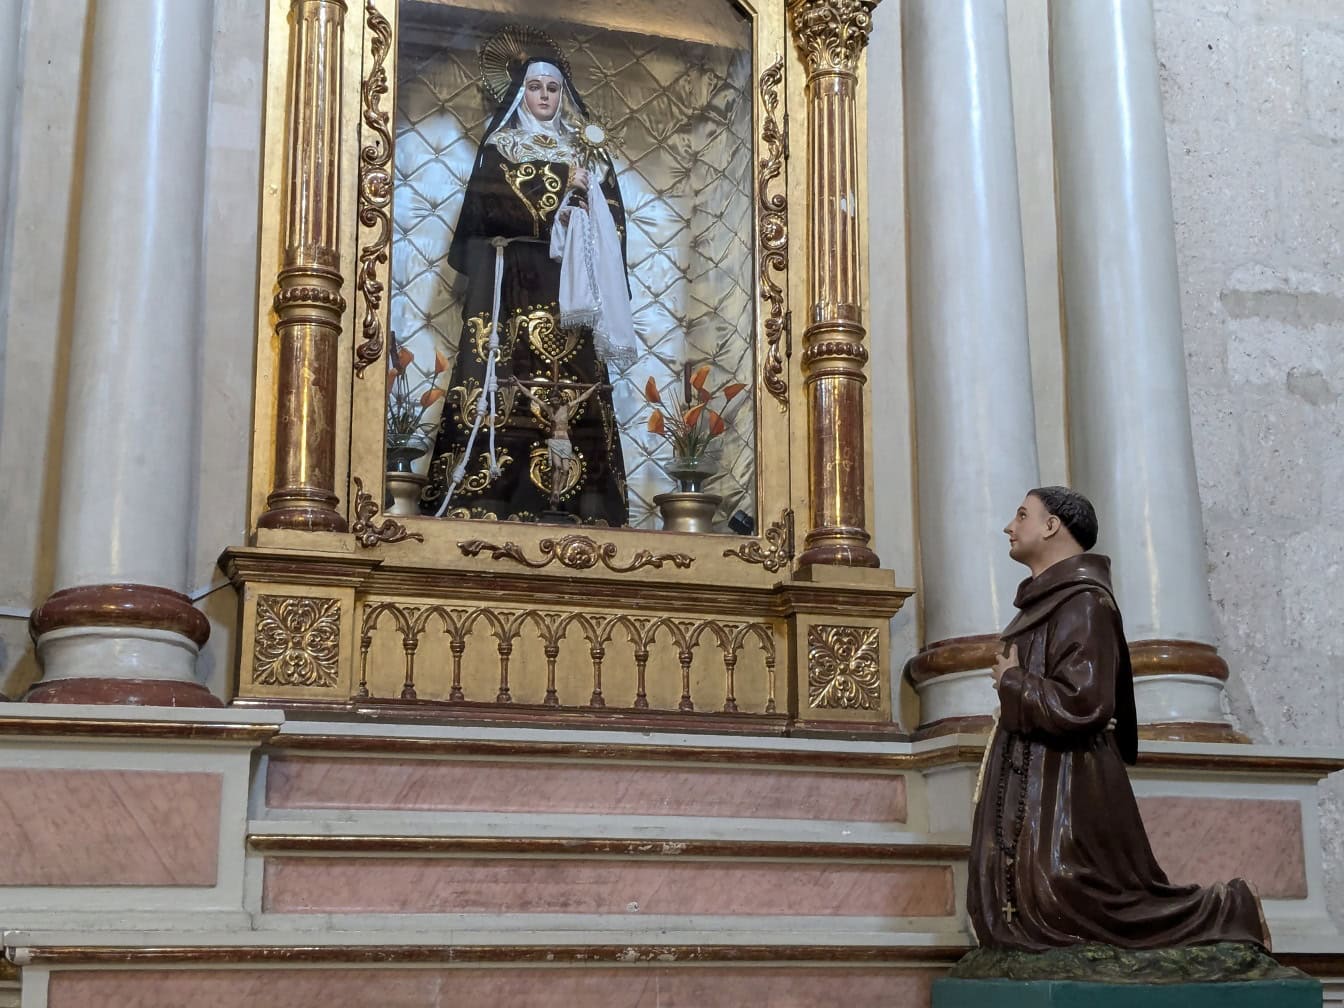 Socha modlitebného muža na kolenách pred sochou mníšky v katolíckom kostole v Peru